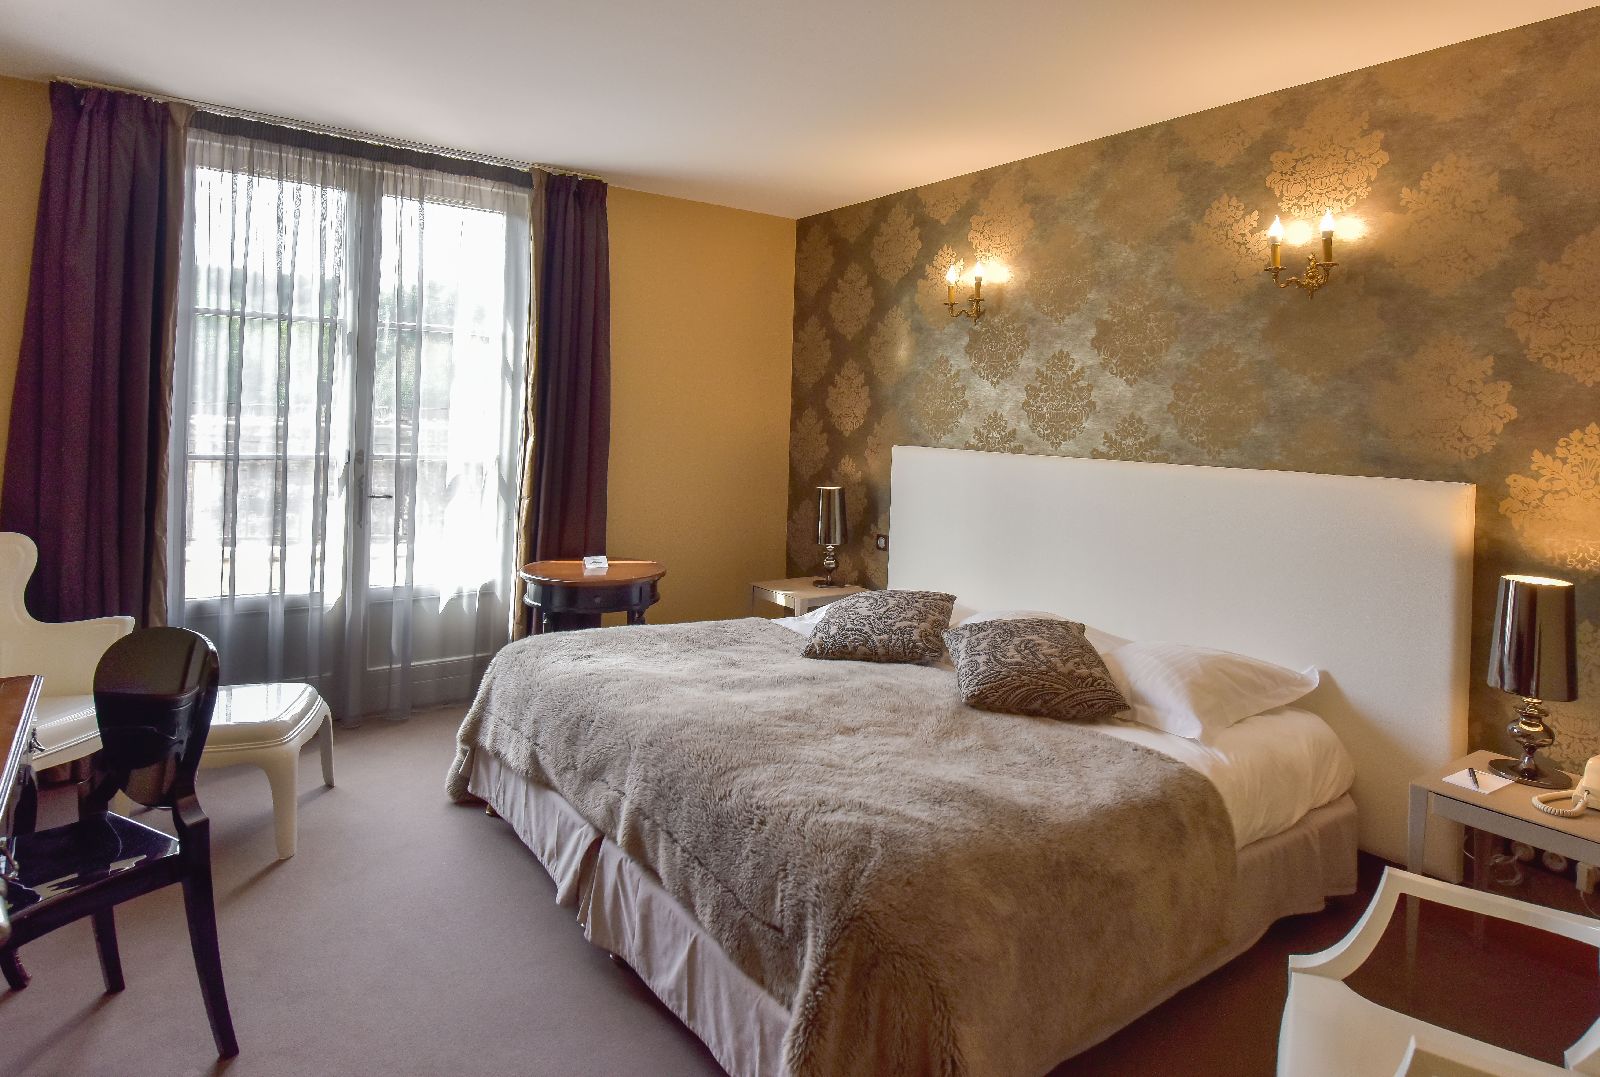 golf-expedition-golf-reis-Frankrijk-Bourgogne-Chateau-de-Chailly-slaapkamer-bed-stoelen-raam-bed-kussens.jpg